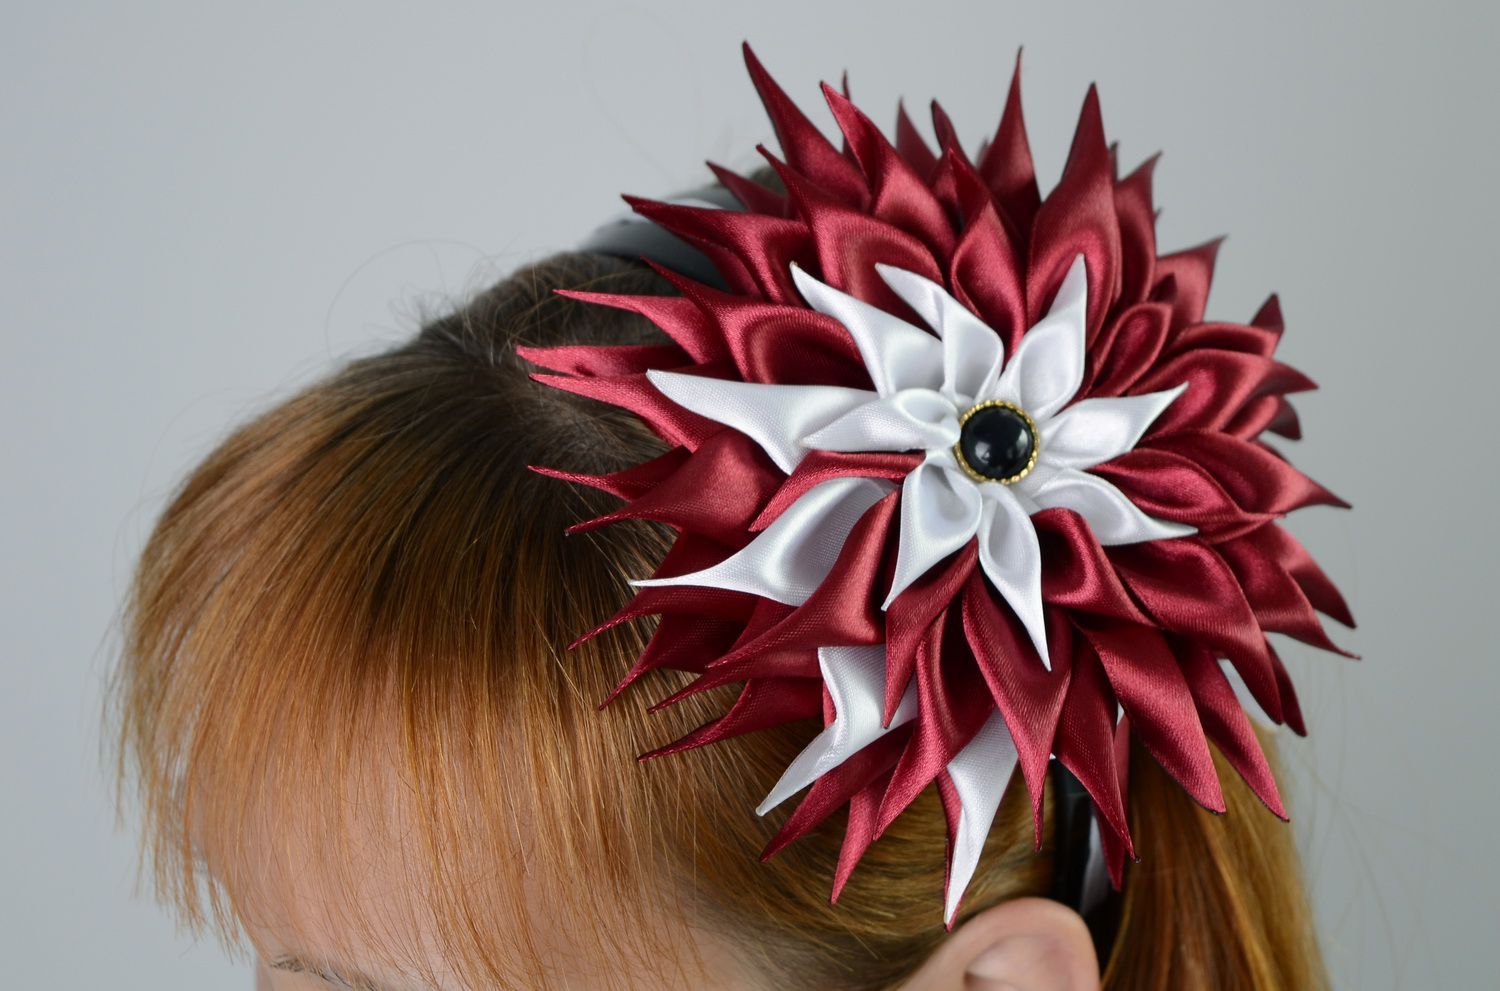 Aro de cabelo, coroa de flores na cabeça com uma flor de cetim  foto 5